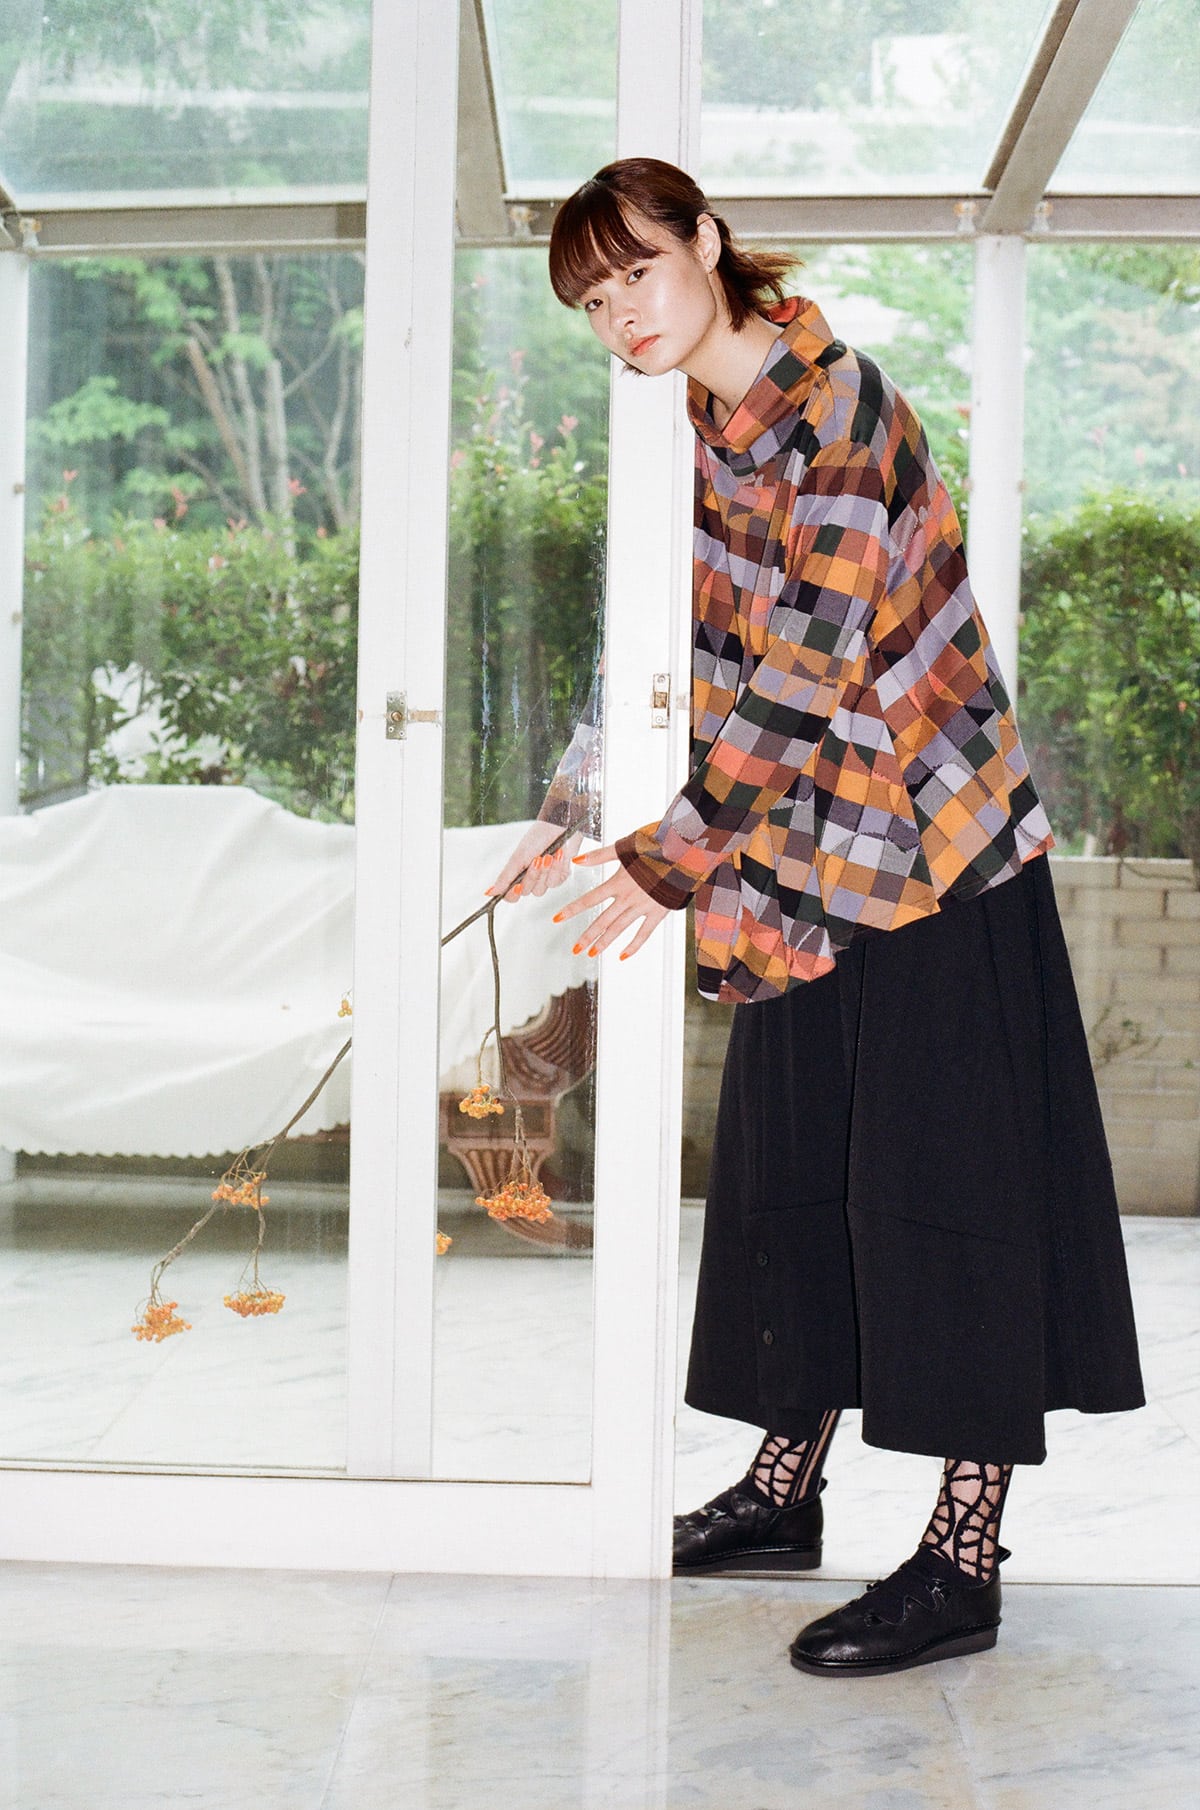 糸と柄が織りなす〈慈雨〉のリミックススタイル | 【GINZA】東京発信の